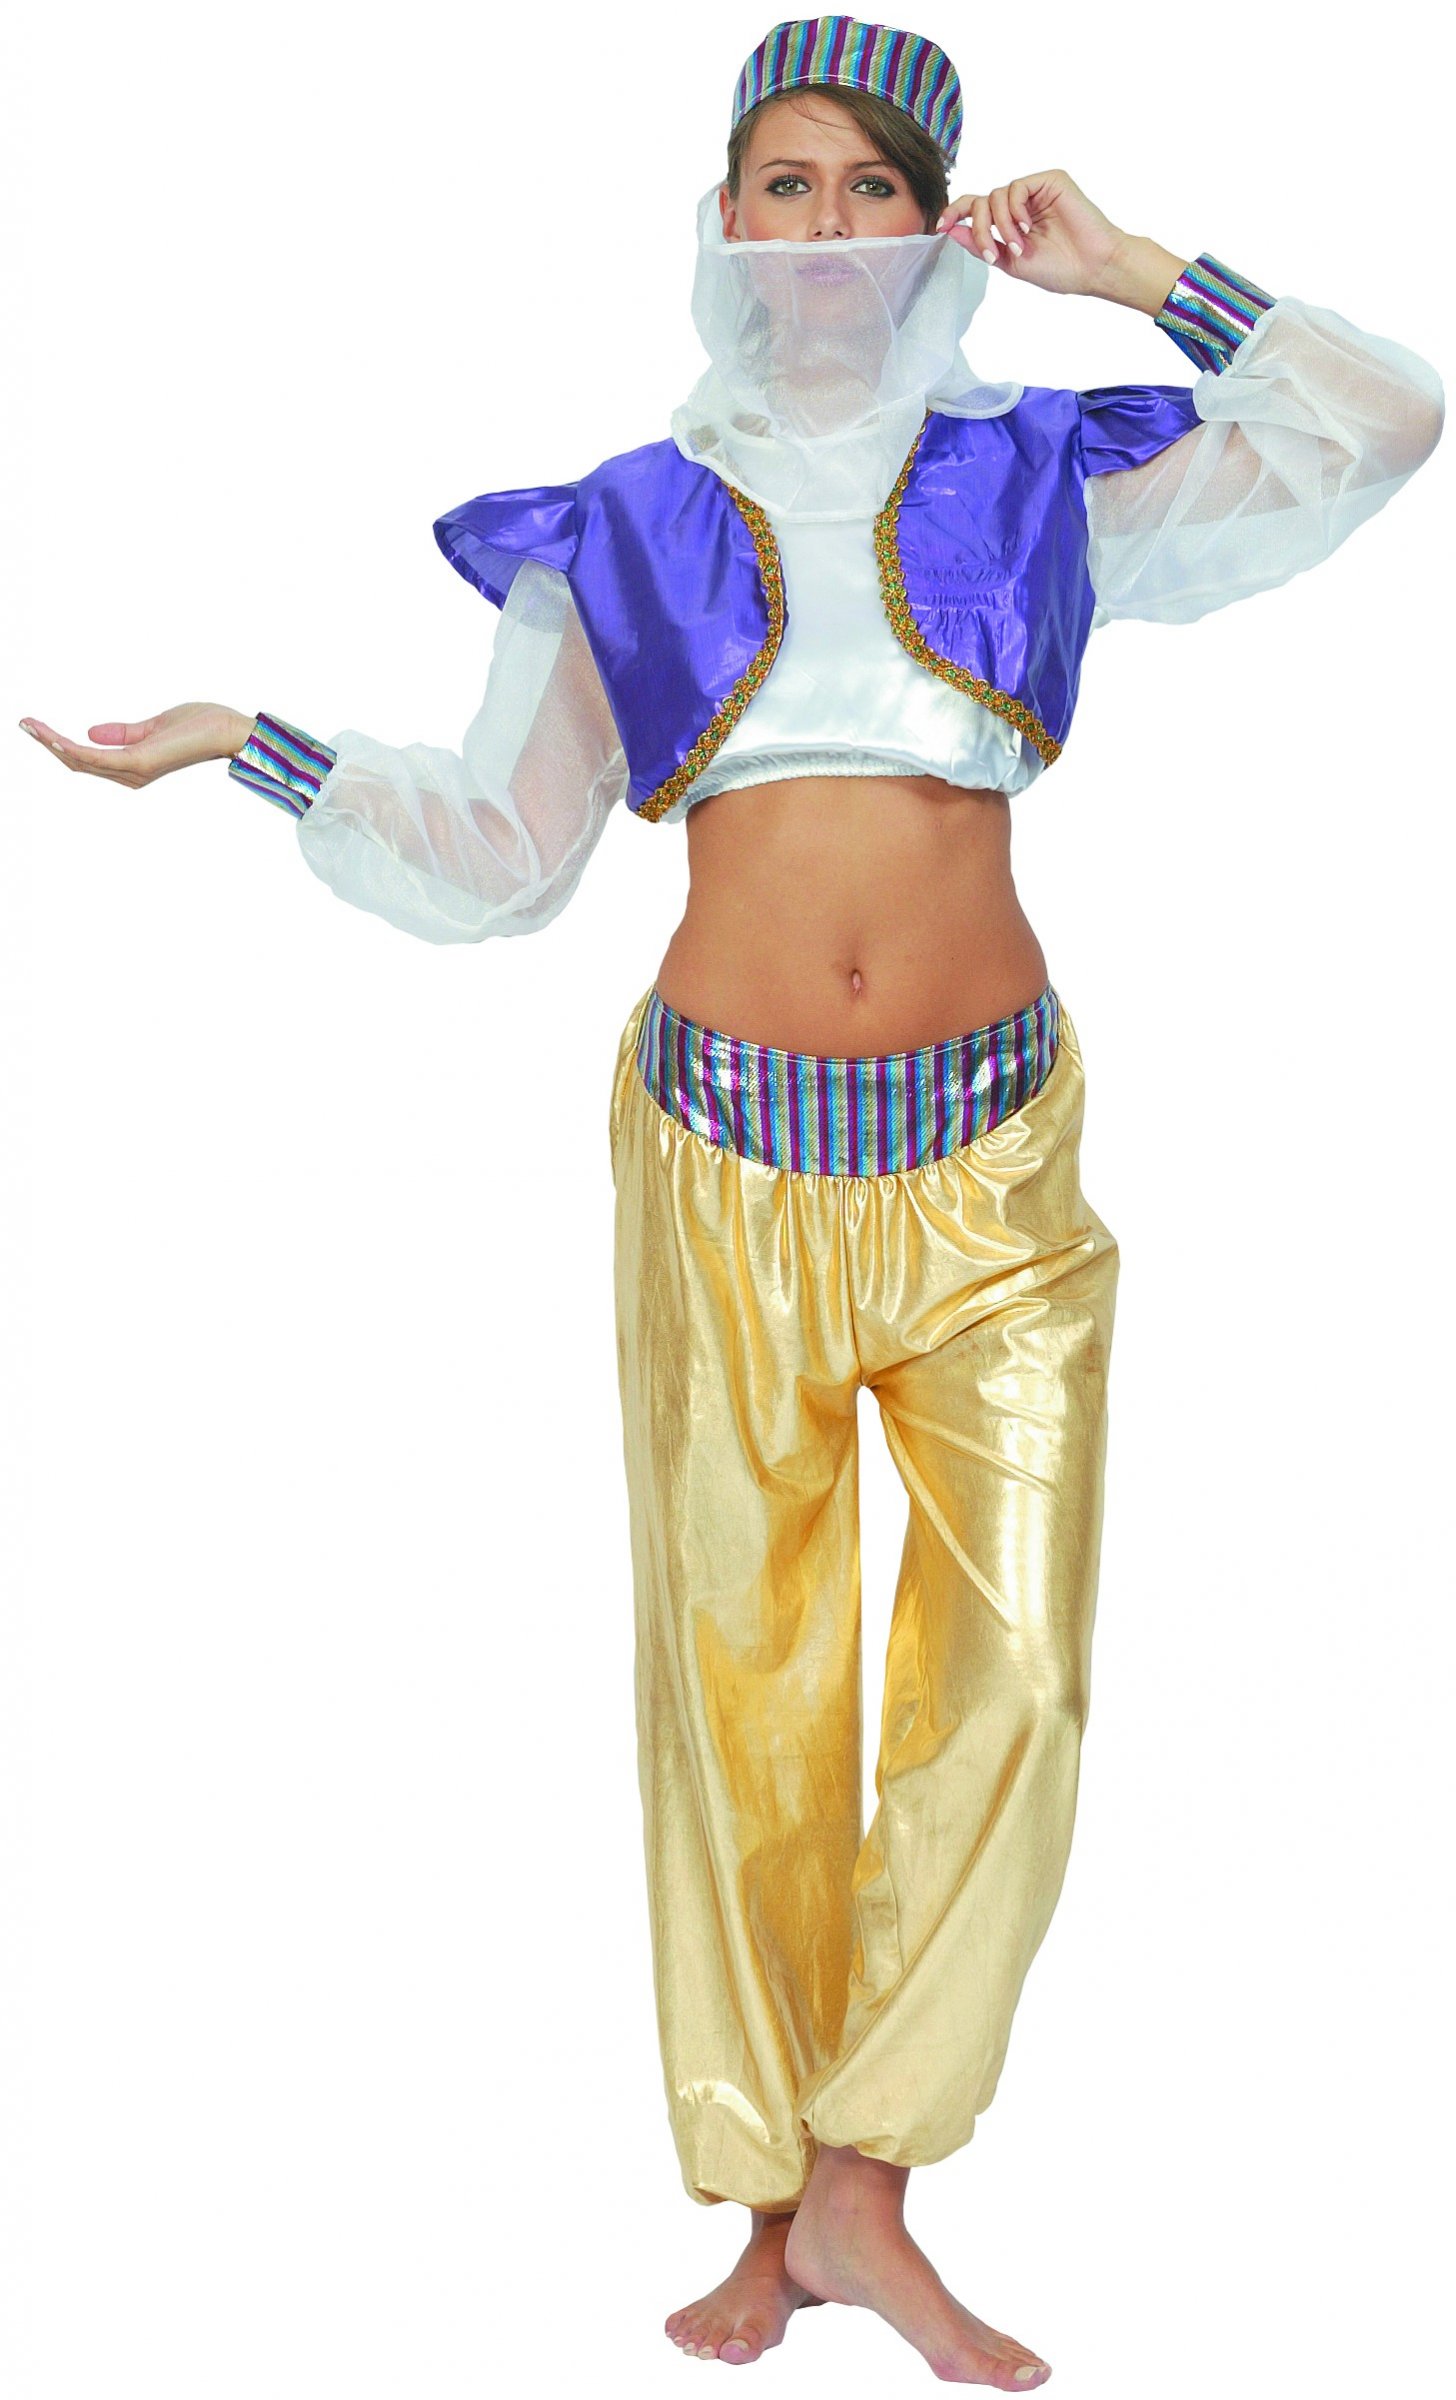 Déguisement danseuse du ventre femme violet (top, chemise, pantalon, coiffe)